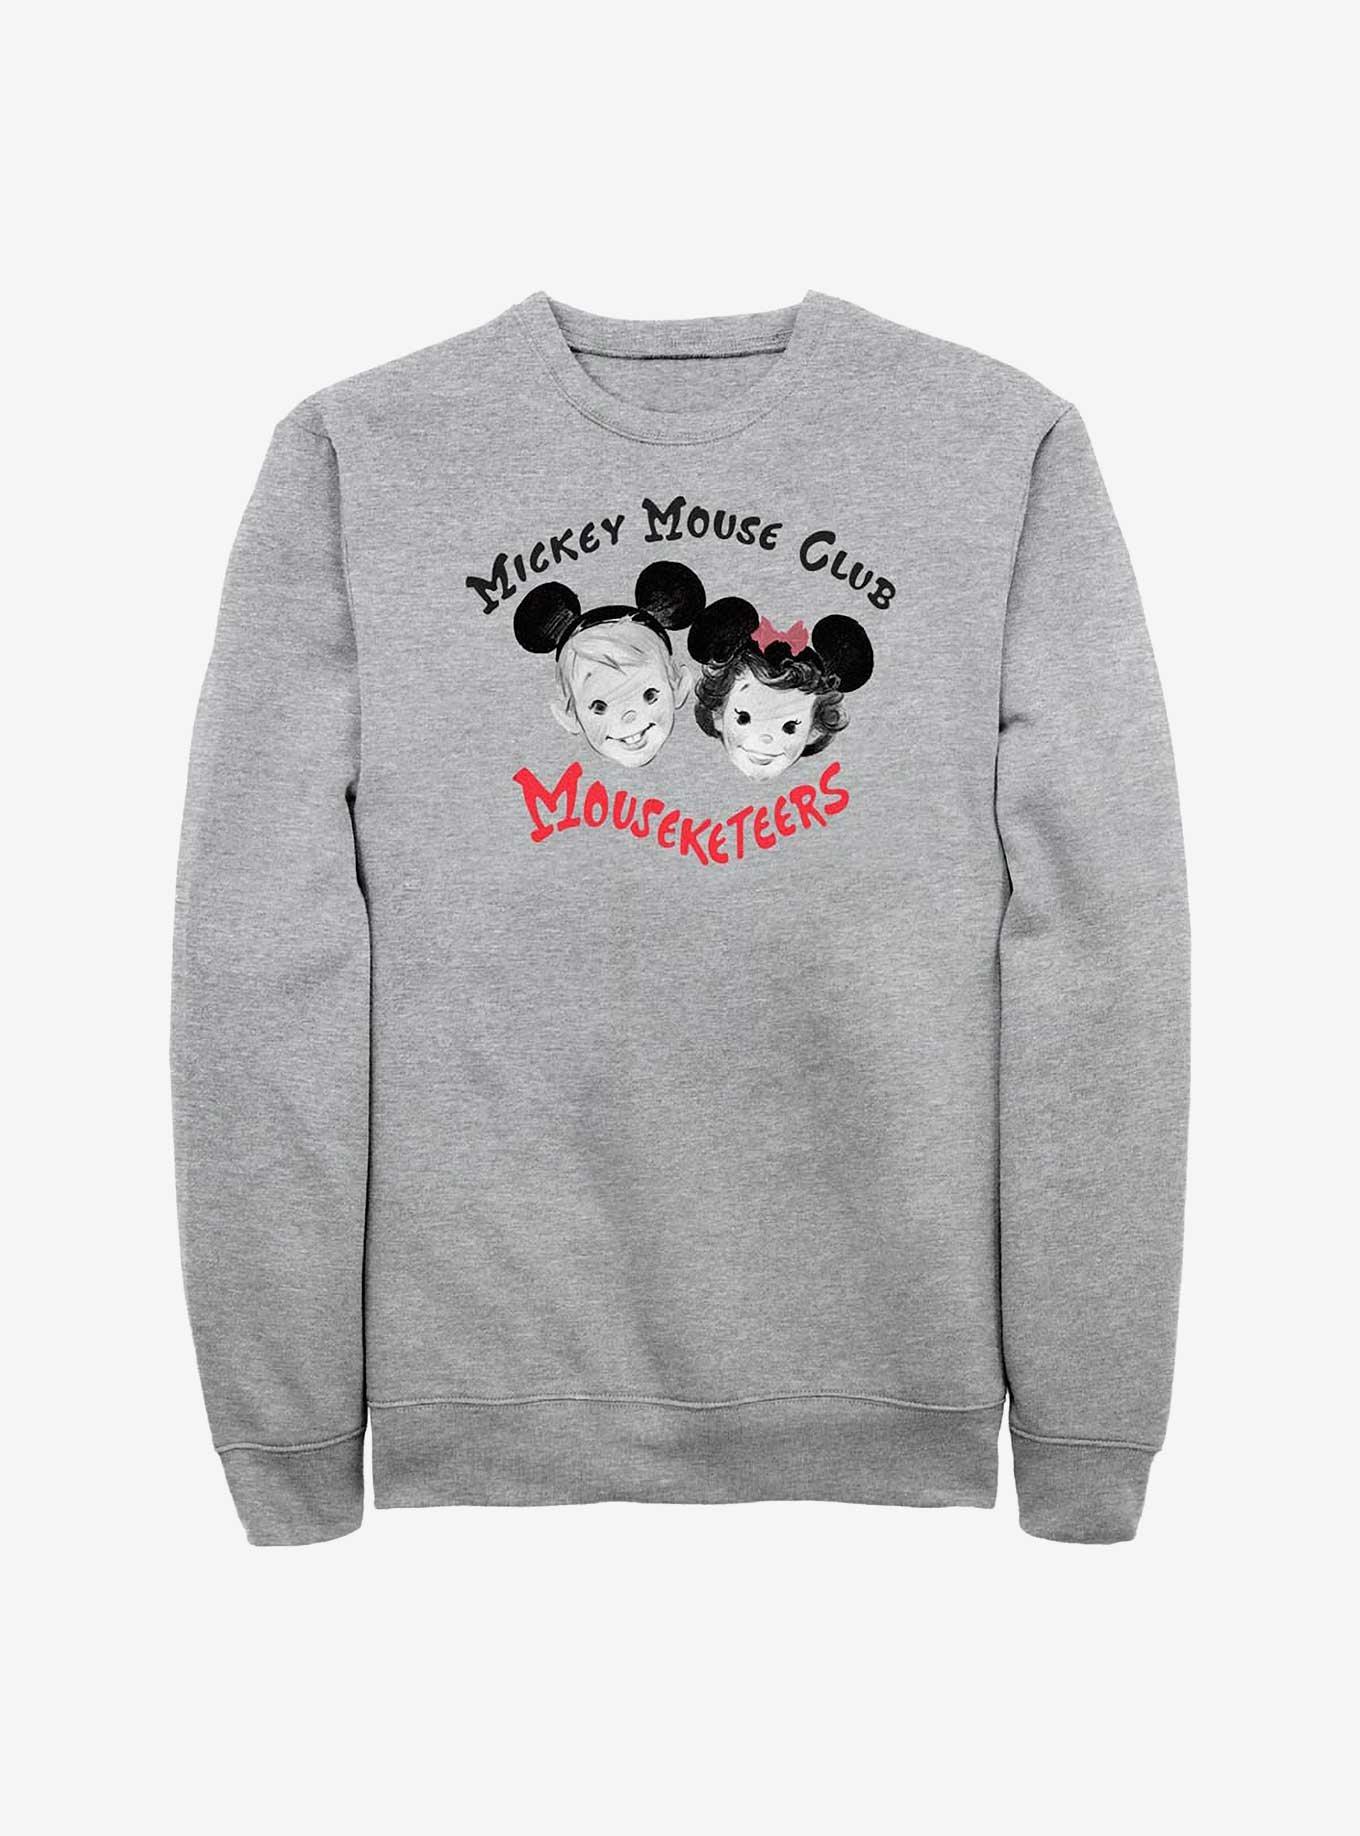 Disney 100 Mouseketeers Club Sweatshirt